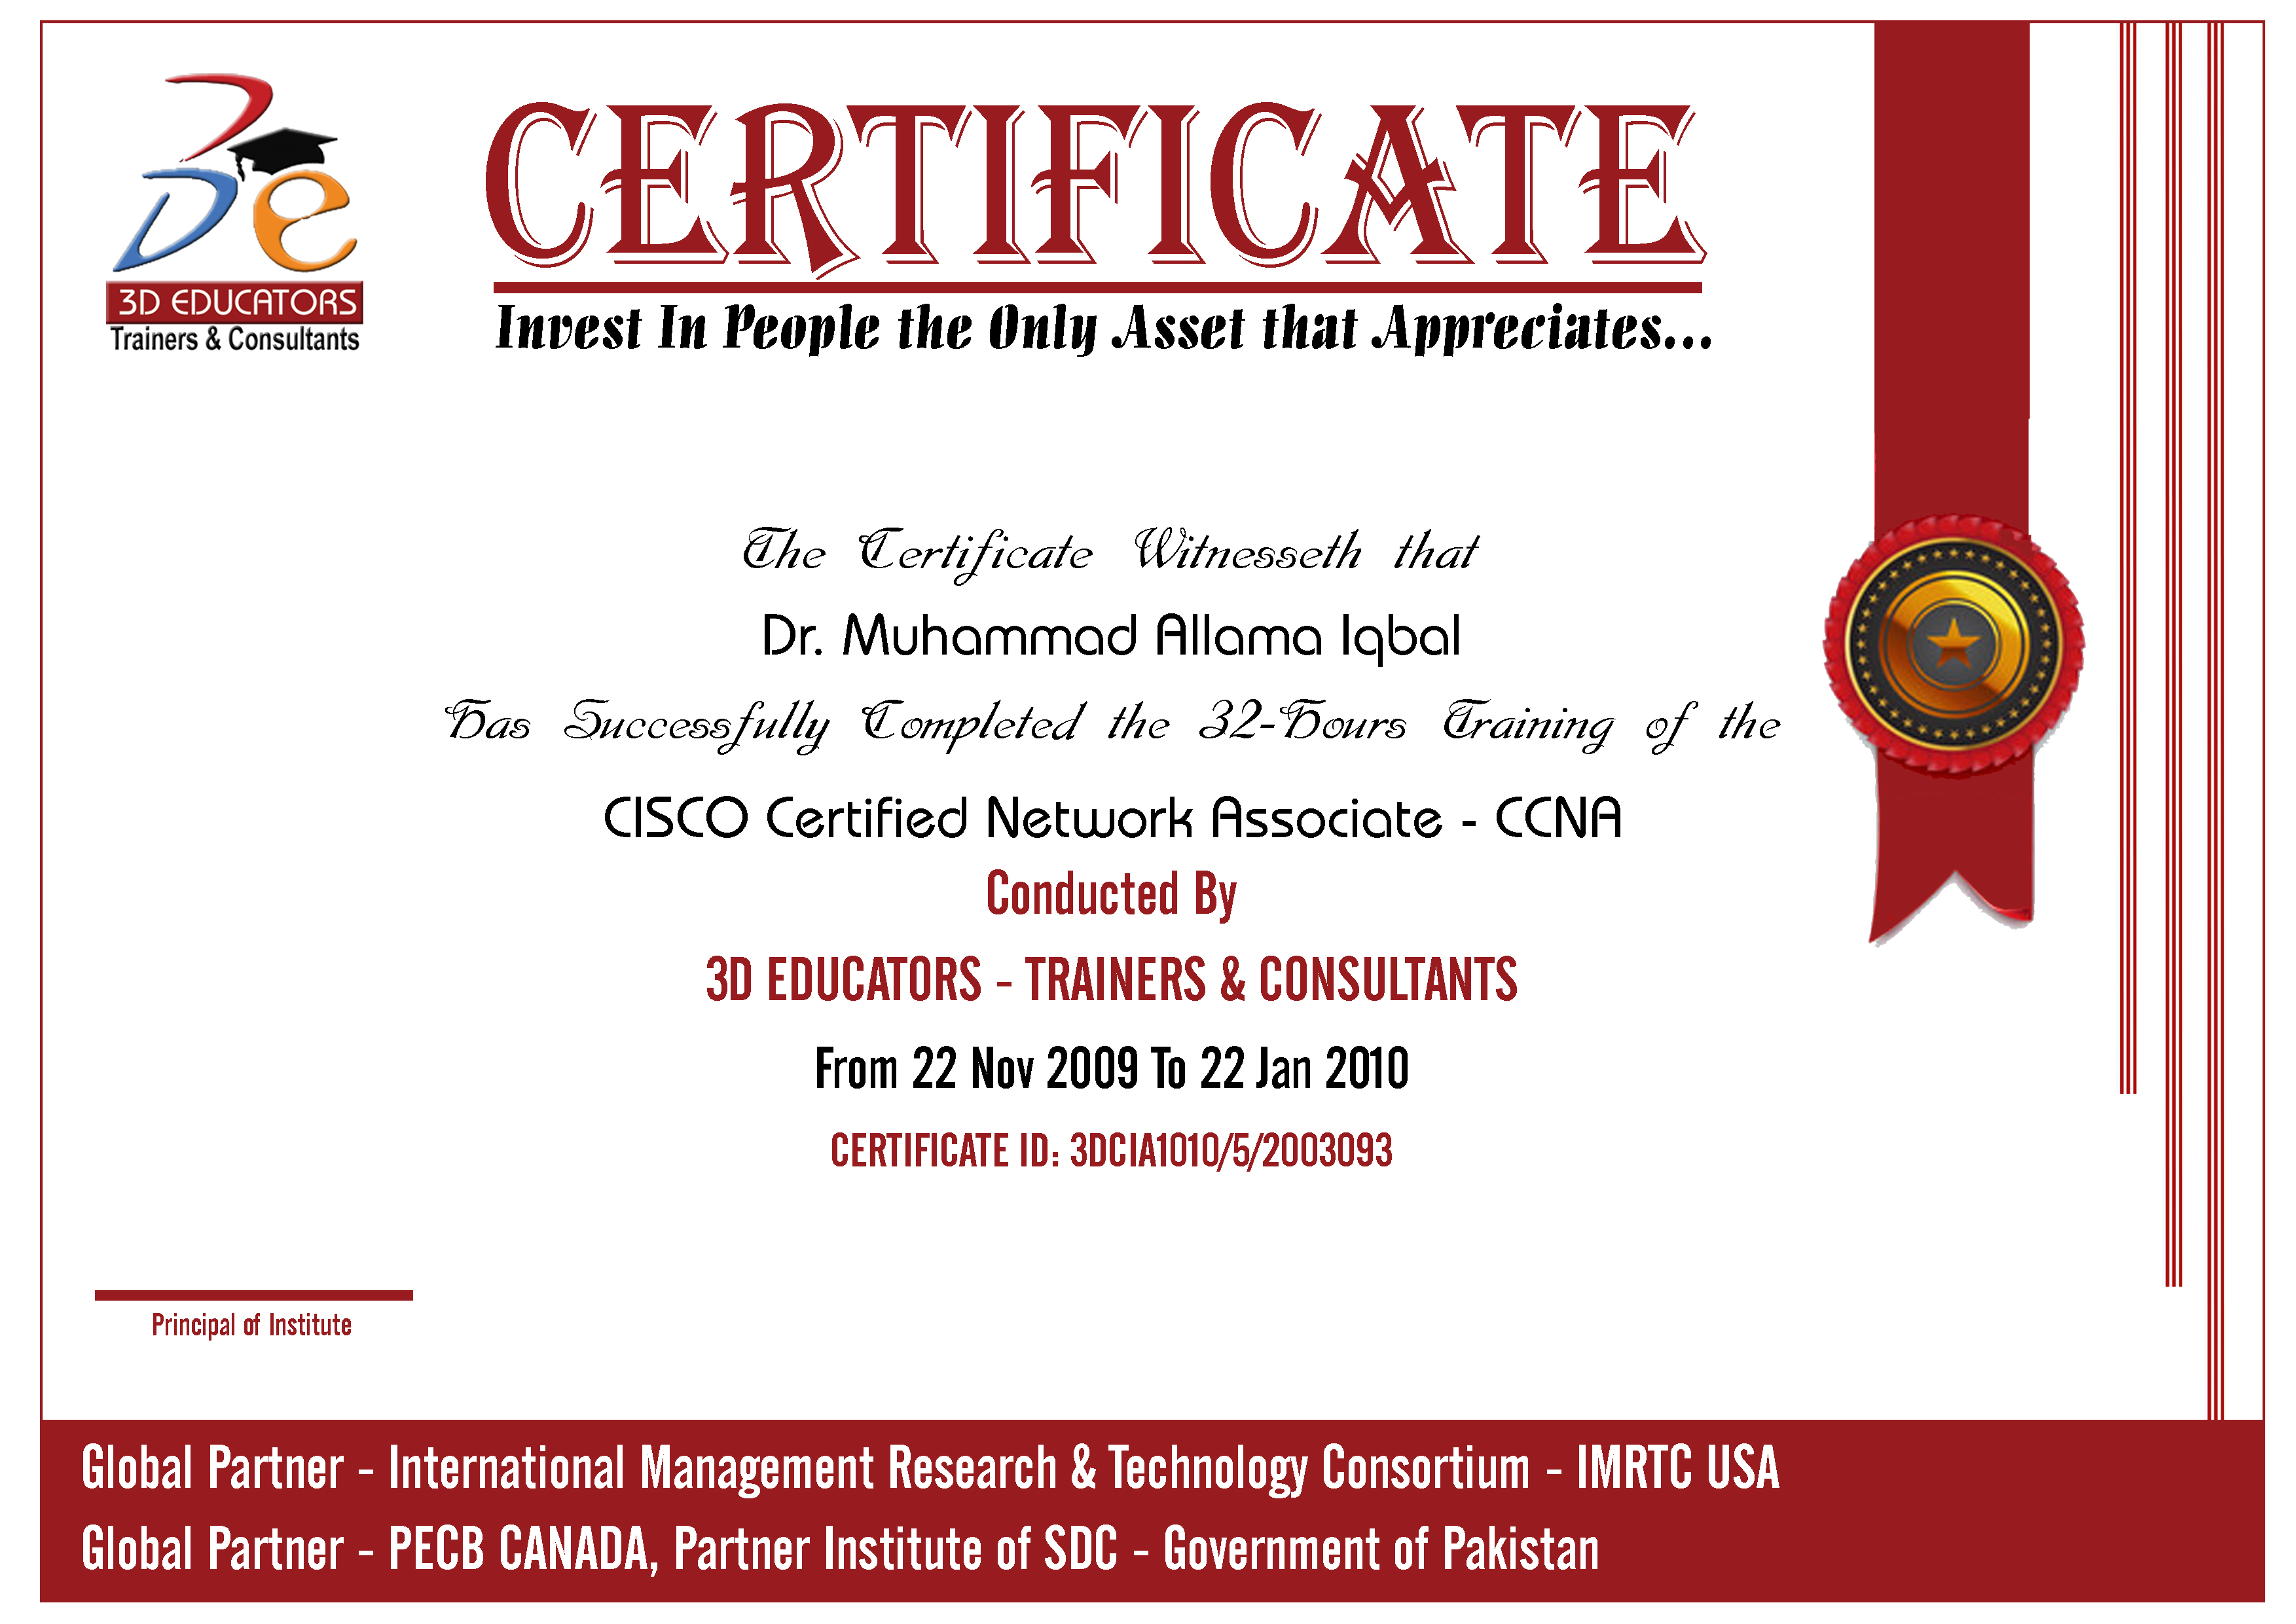 CCNA - CISCO Sample Certificate